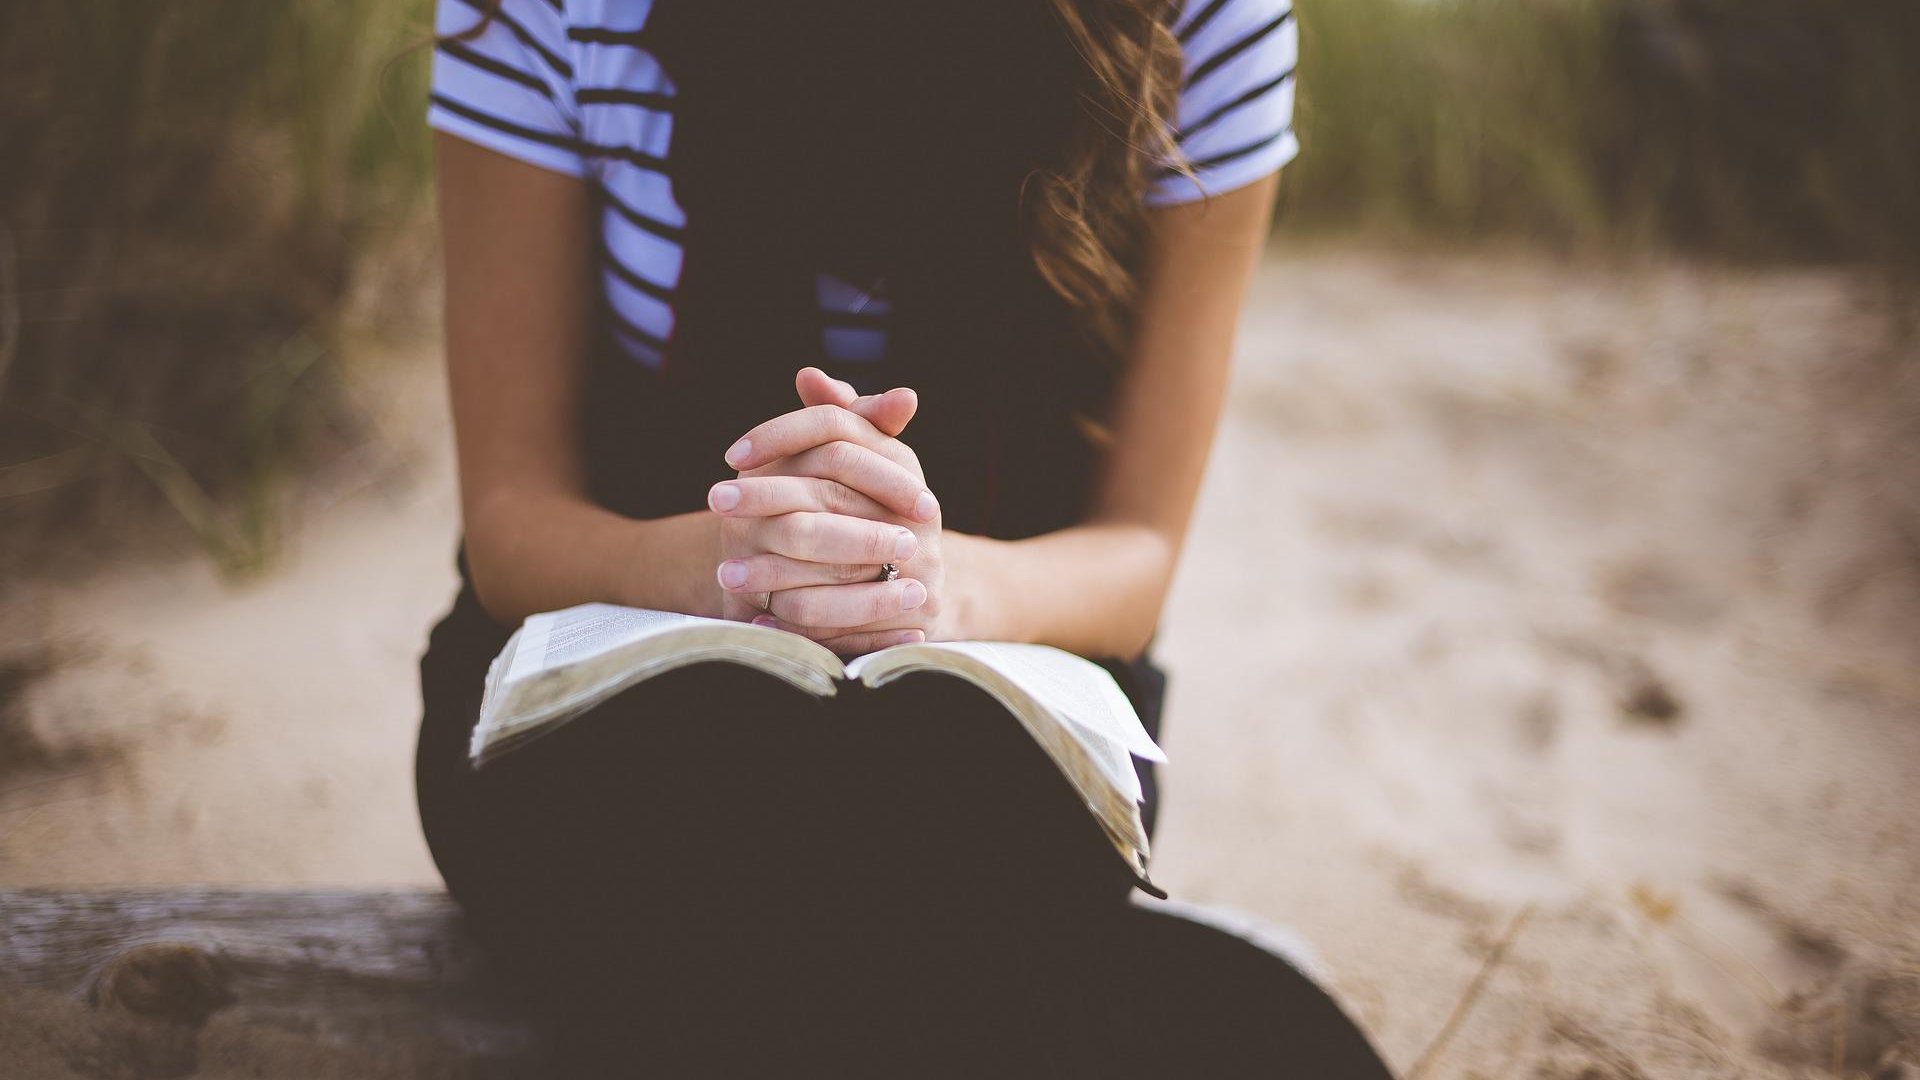 Na praia, uma moça está rezando com uma Bíblia apoiada em seu colo.